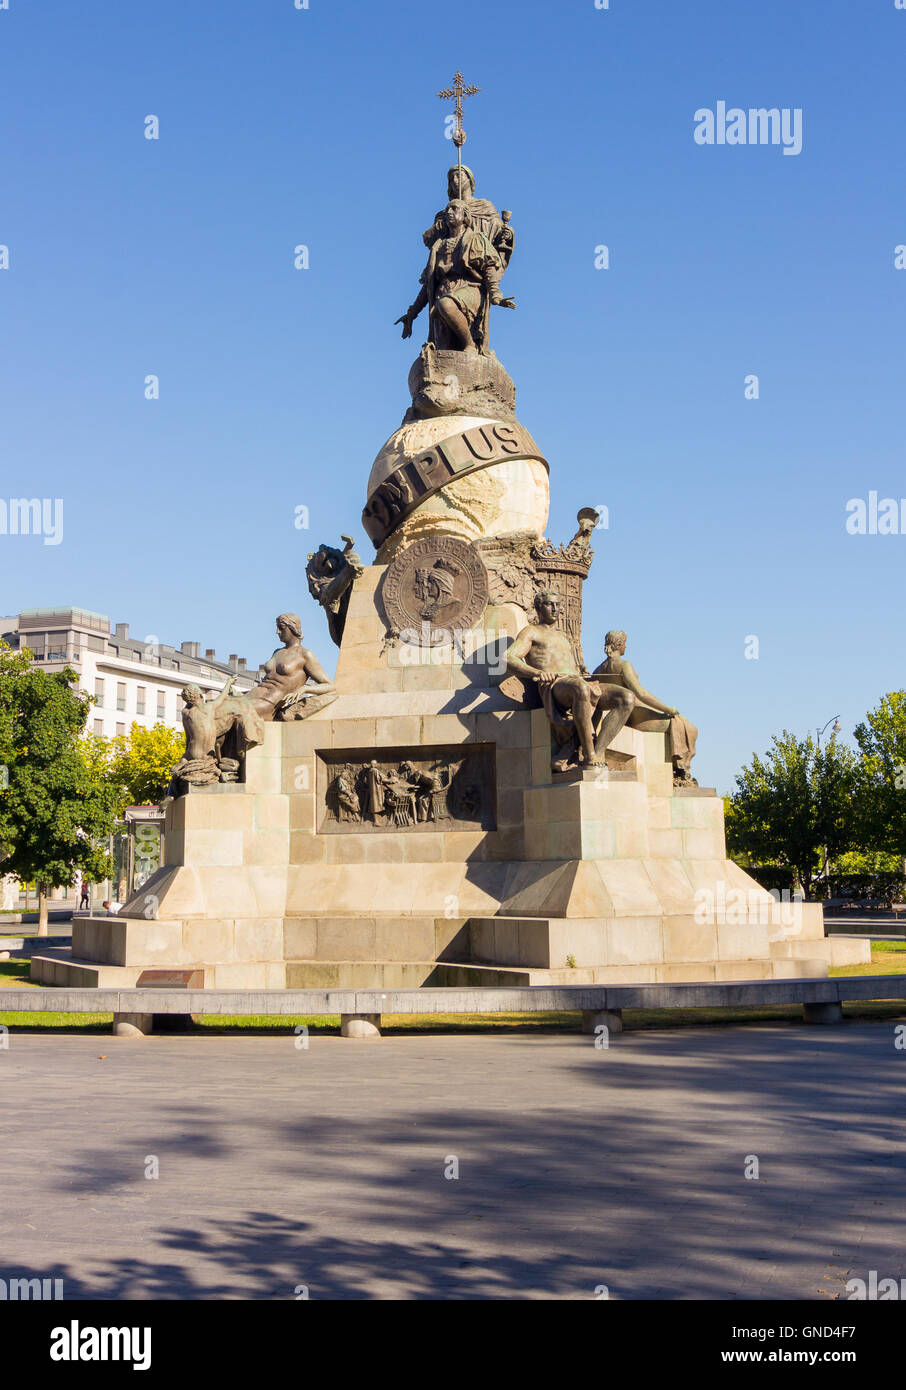 Statue monument de Colomb à Valladolid, Espagne Banque D'Images